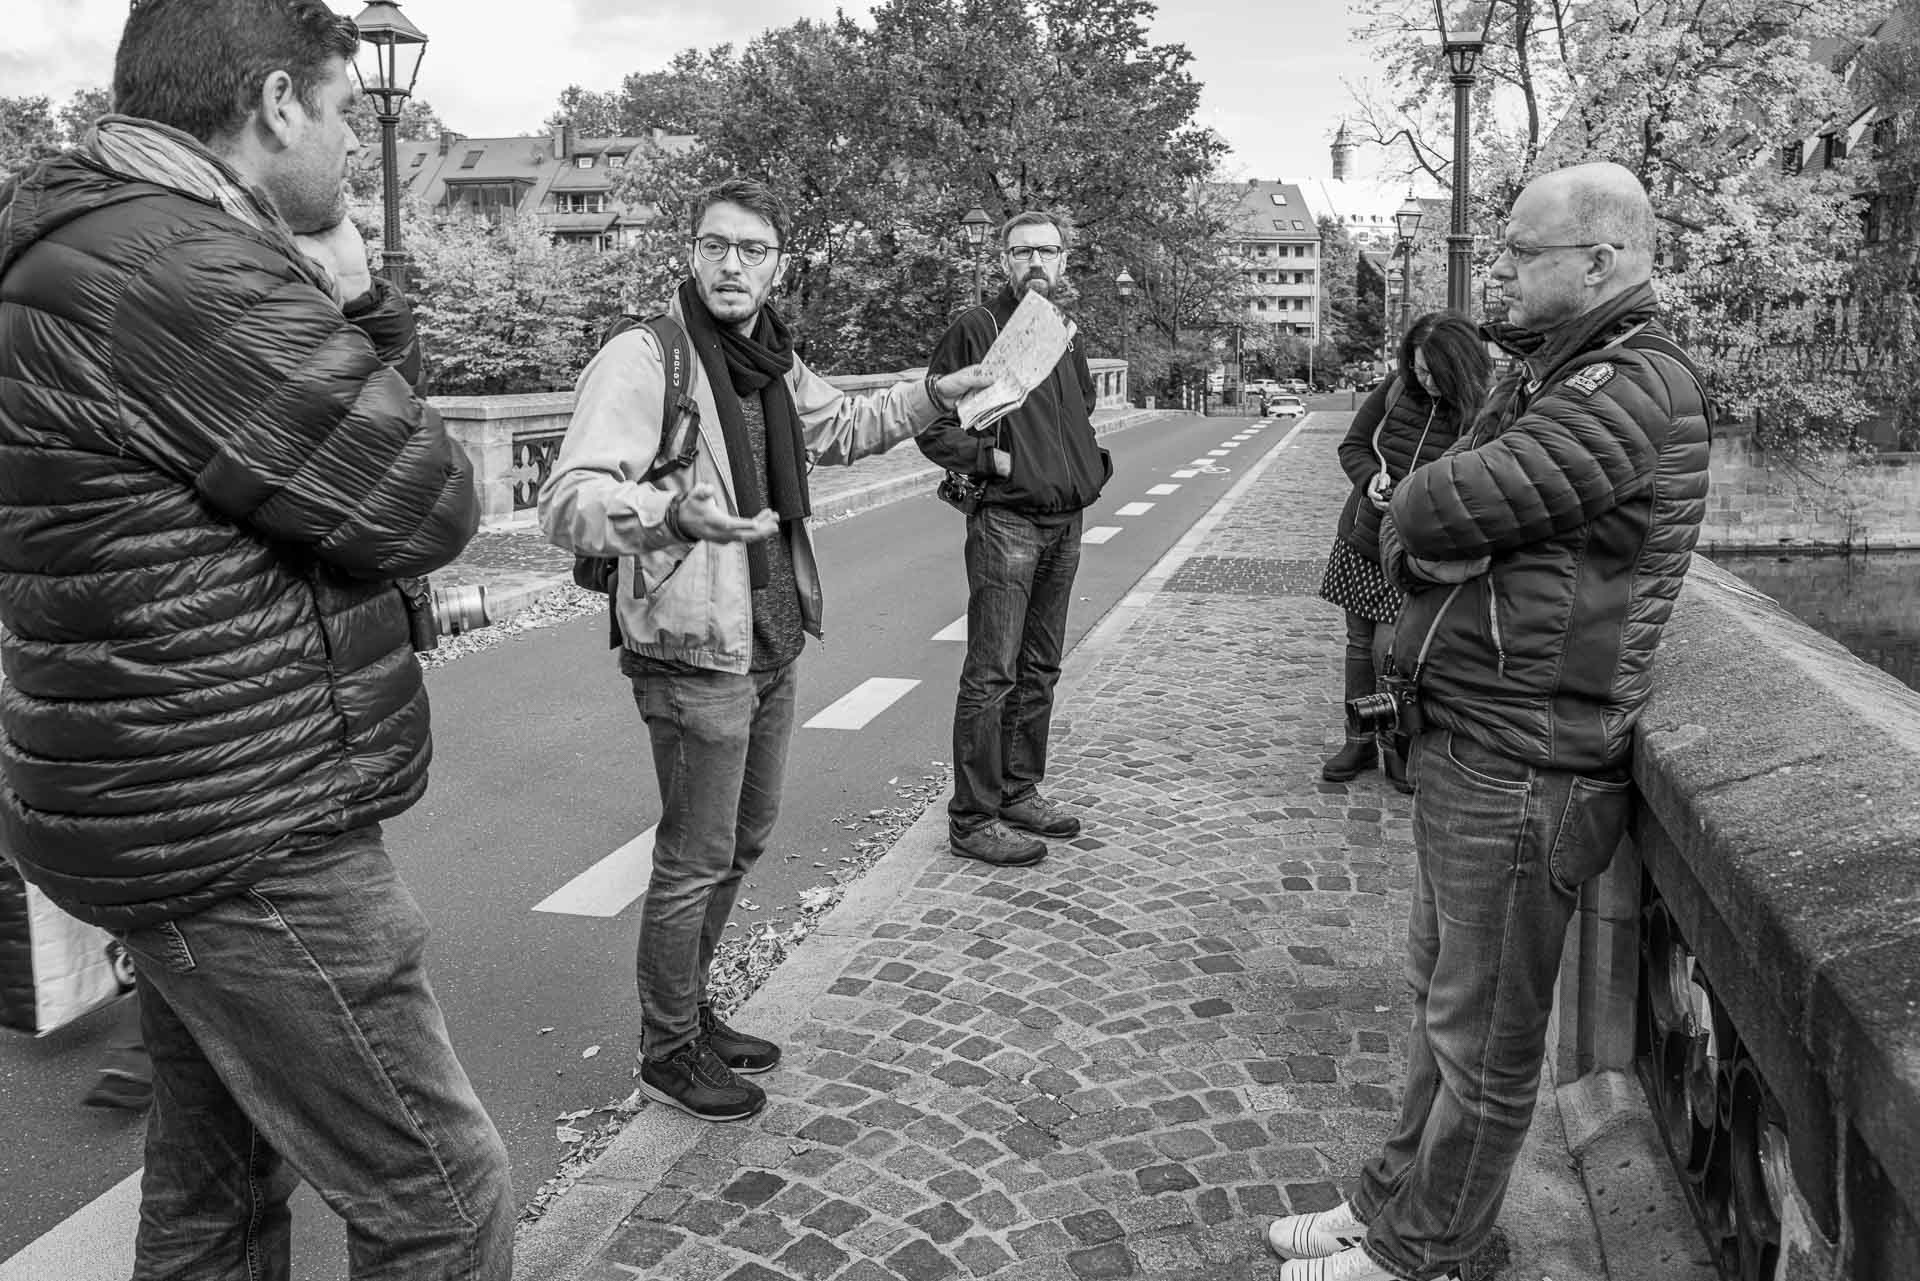 Jörg erklärt dem interessierten Fotografenteam die Örtlichkeit